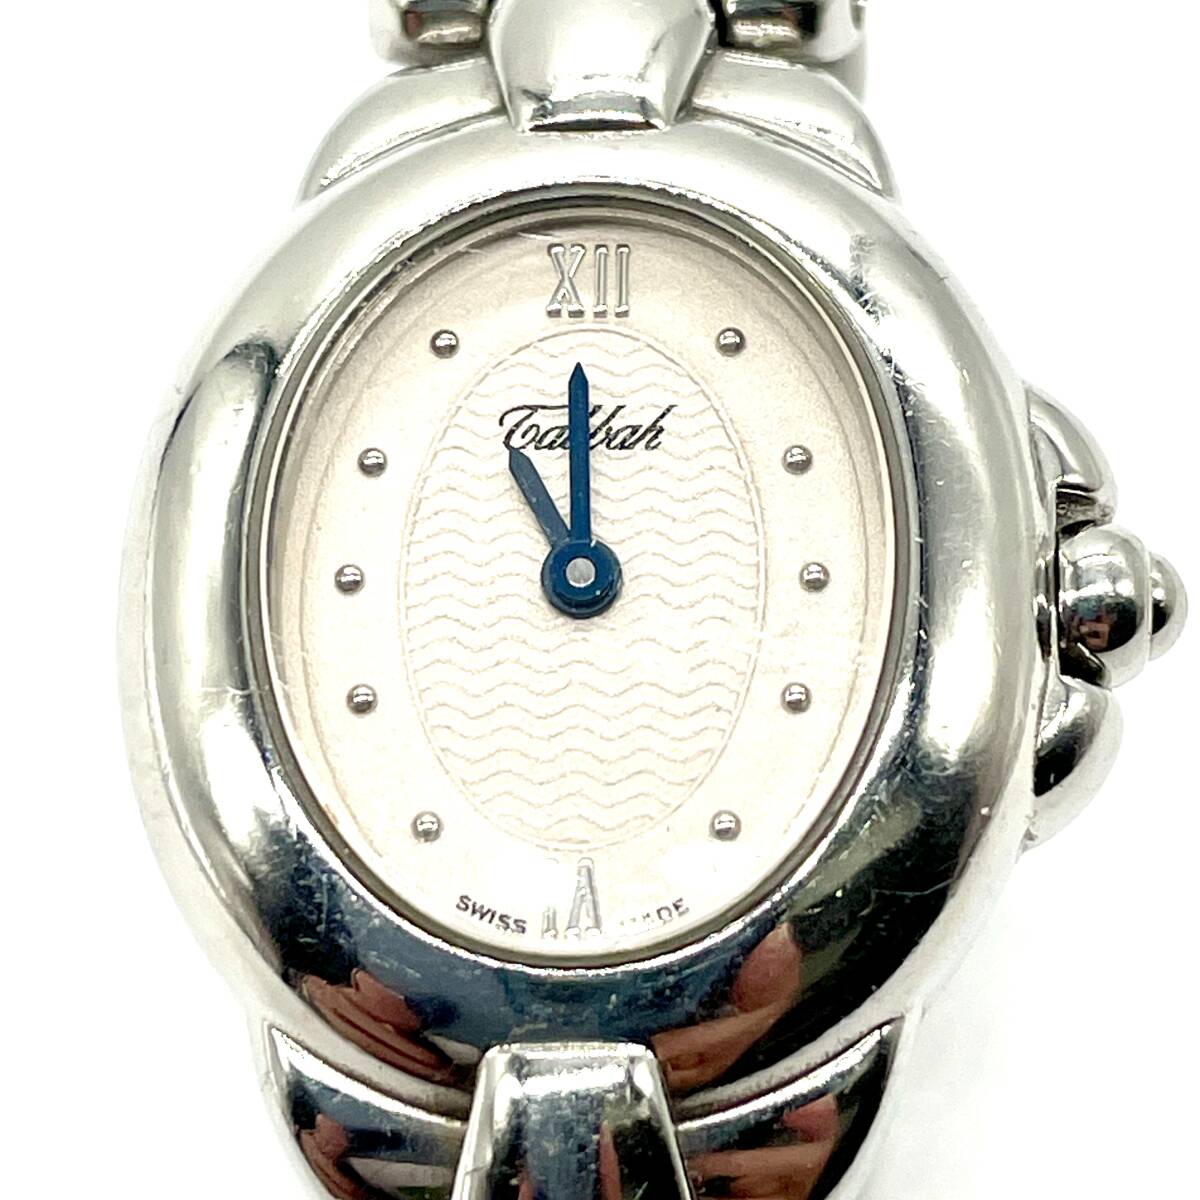  работа товар Tabbah Petite copa SWISS MADE ювелирные изделия часы кварц наручные часы Tabah маленький koba блюз chi-ru серебряный цвет редкость редкий 